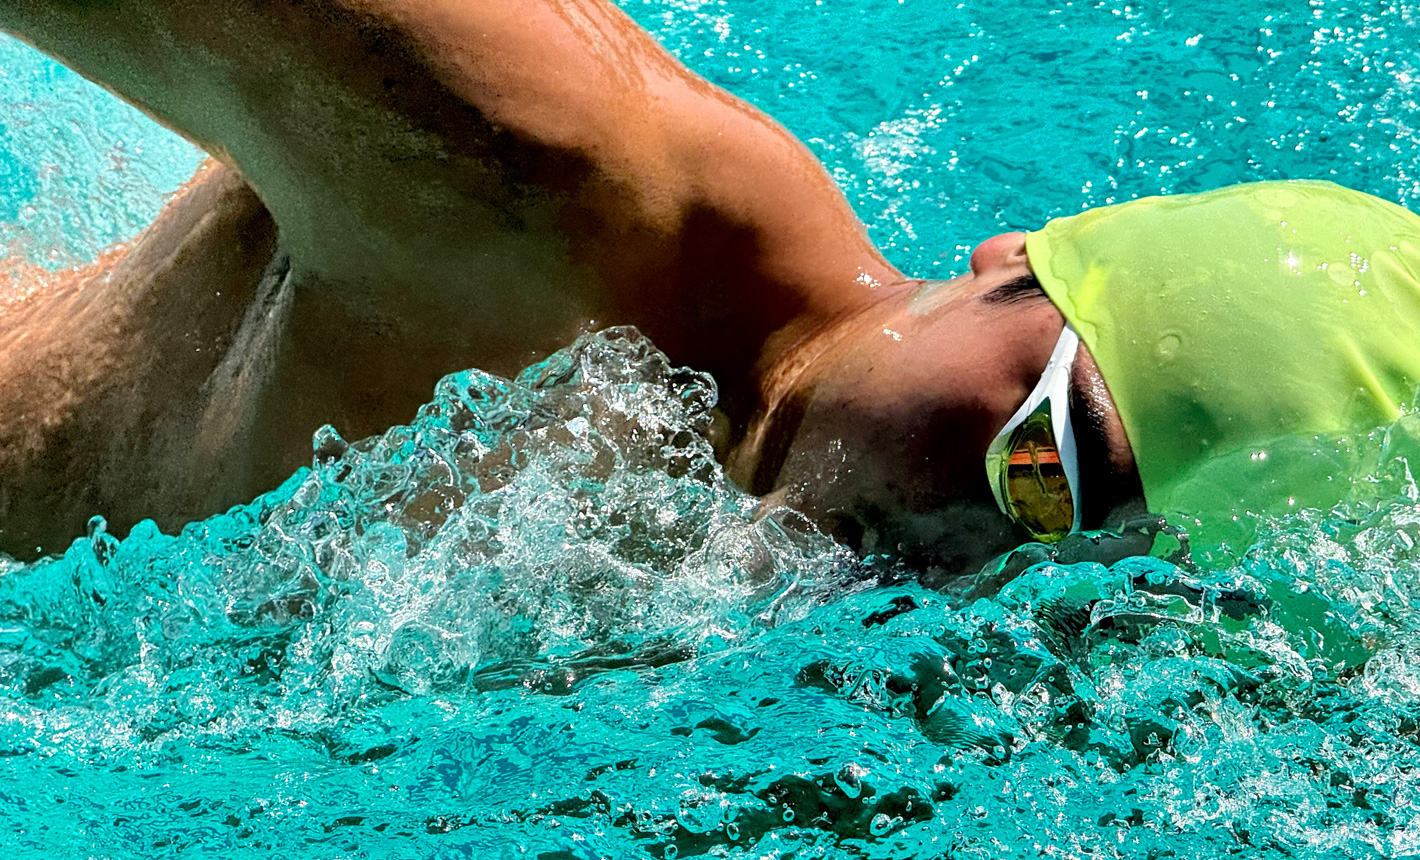 Foto ampliada com ótimo nível de detalhes de um nadador em uma piscina com água respingando ao seu redor.